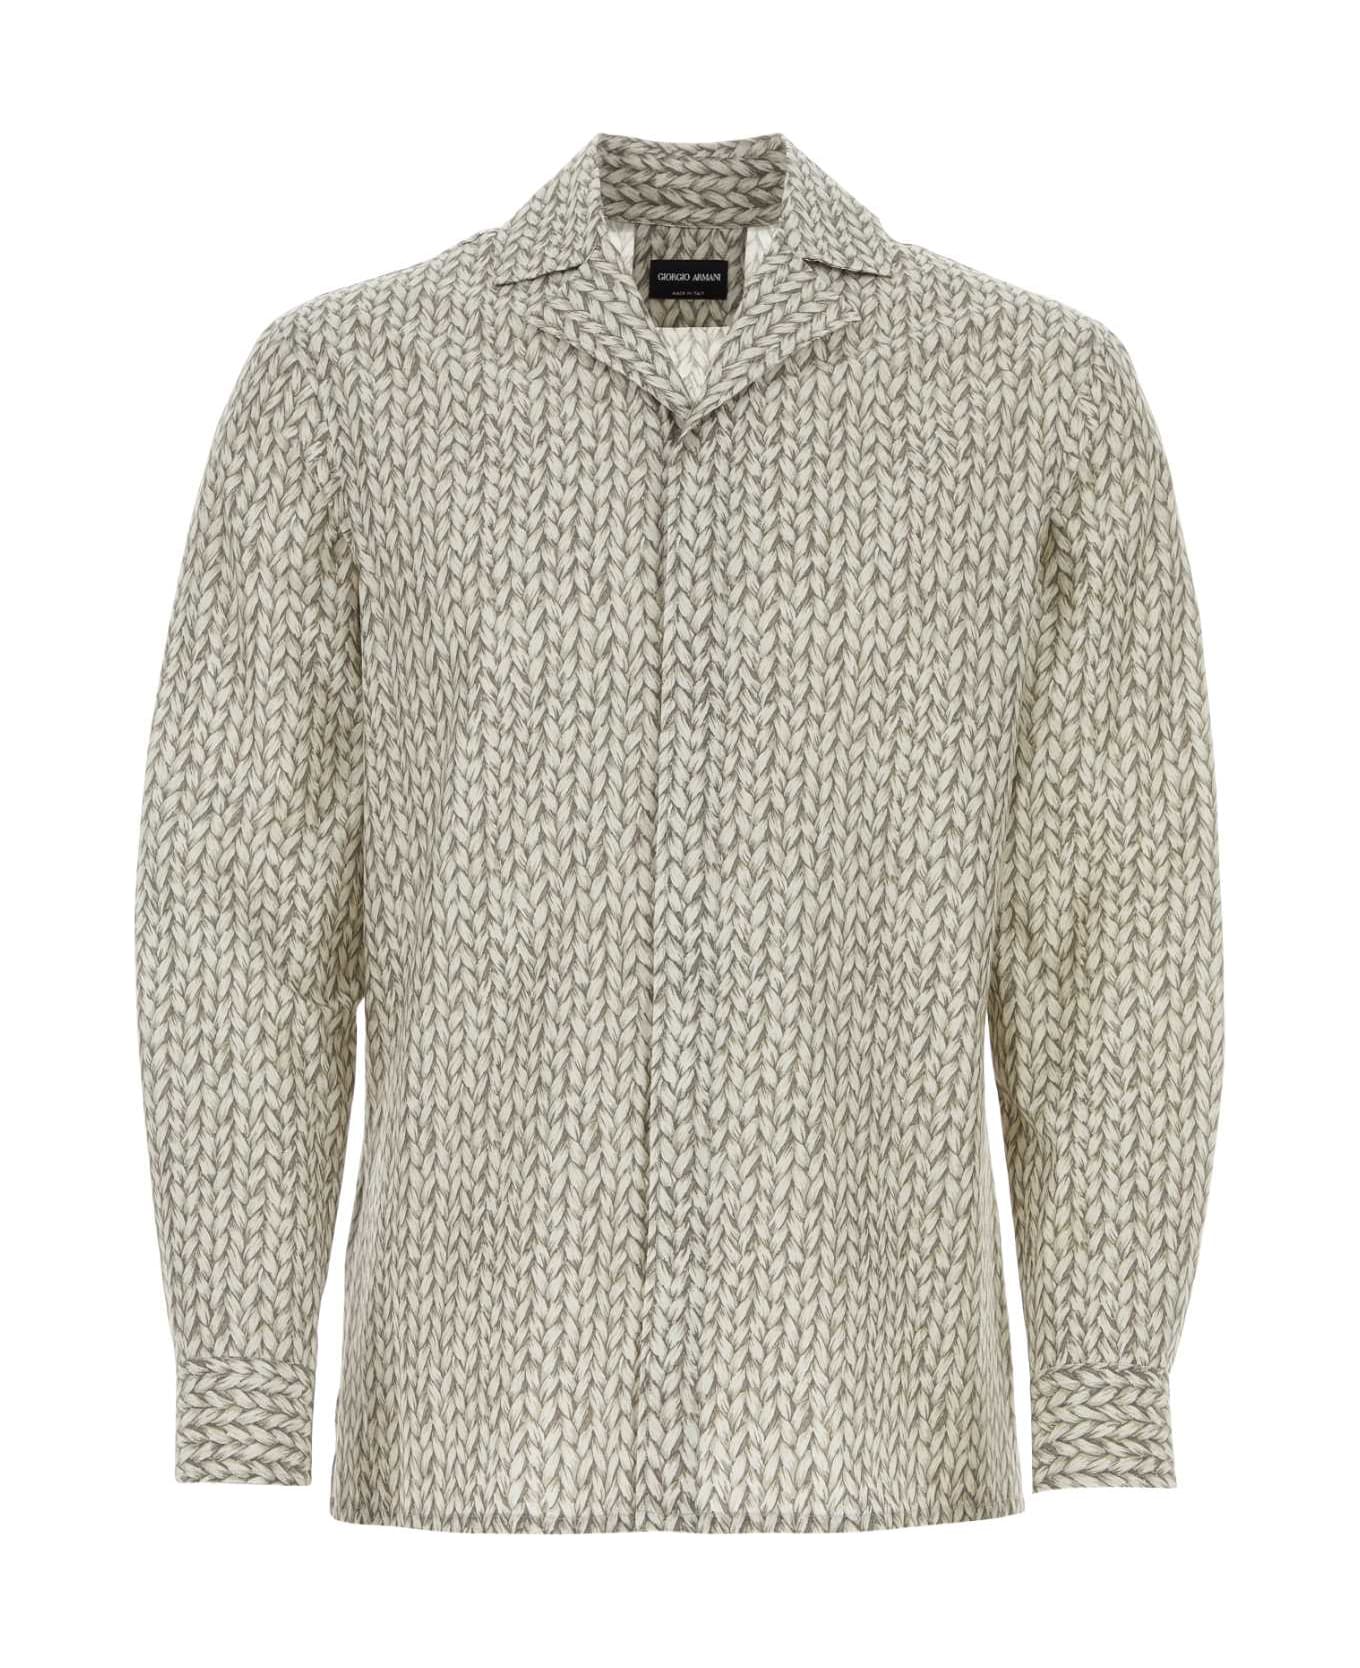 Giorgio Armani Printed Cotton Blend Shirt - MULTI シャツ